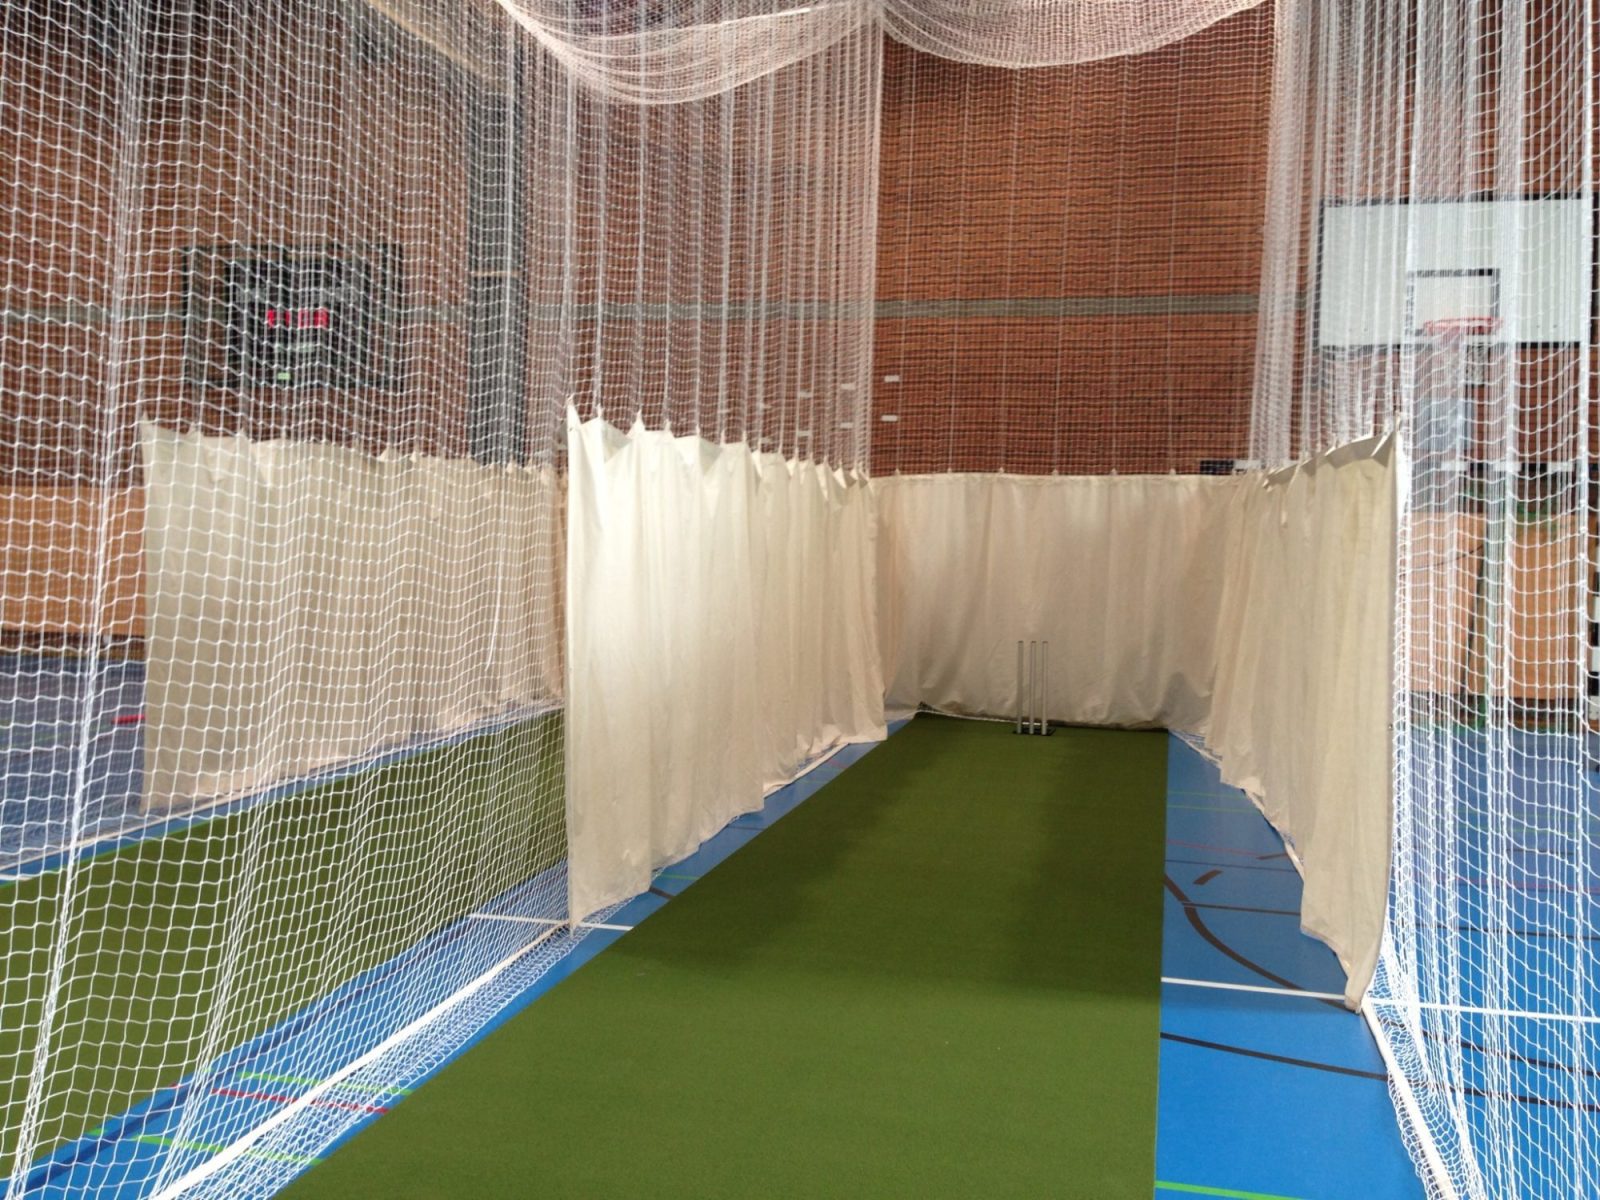 Indoor Cricket Mat – 10m